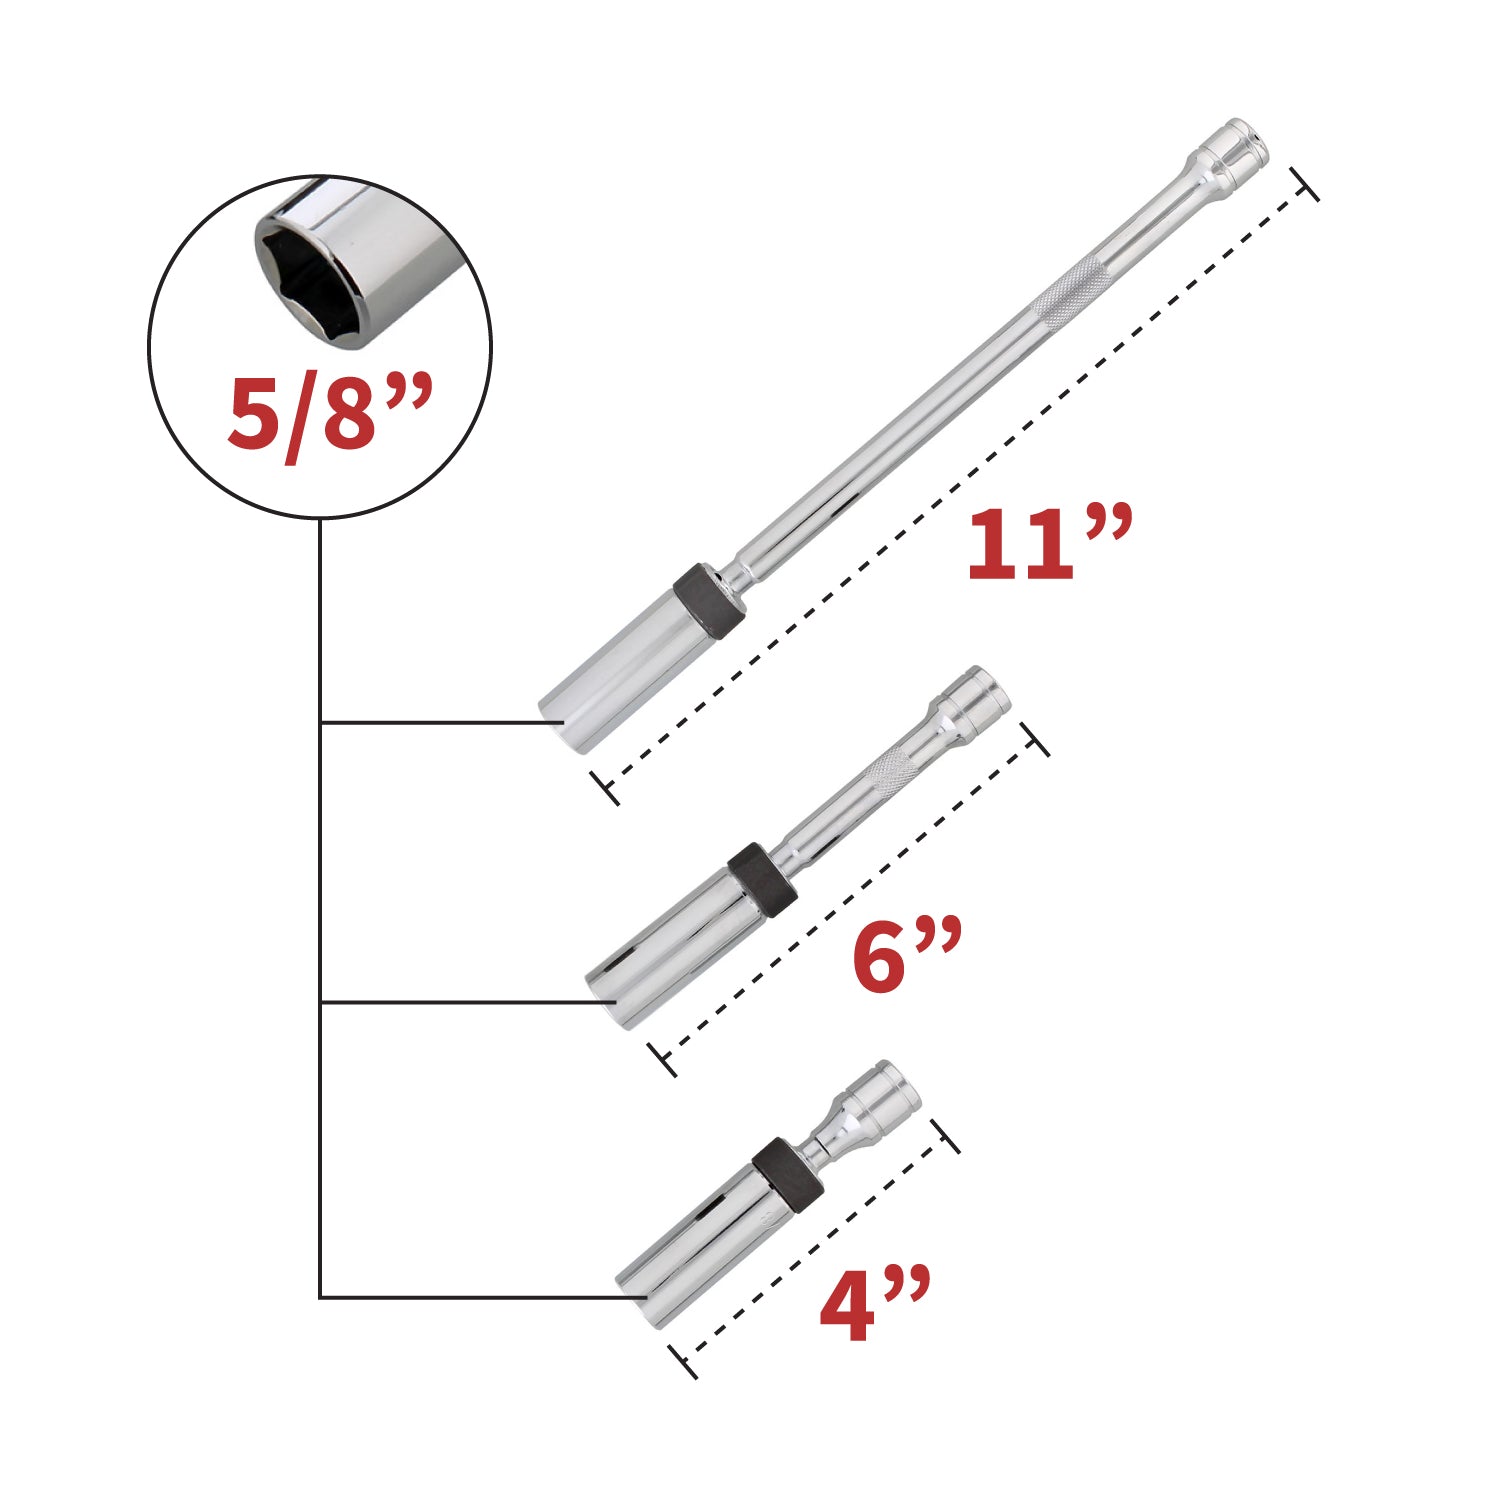 Spark Plug Socket Set – 3 Piece 5/8” Inch Drive Magnetic Socket Set